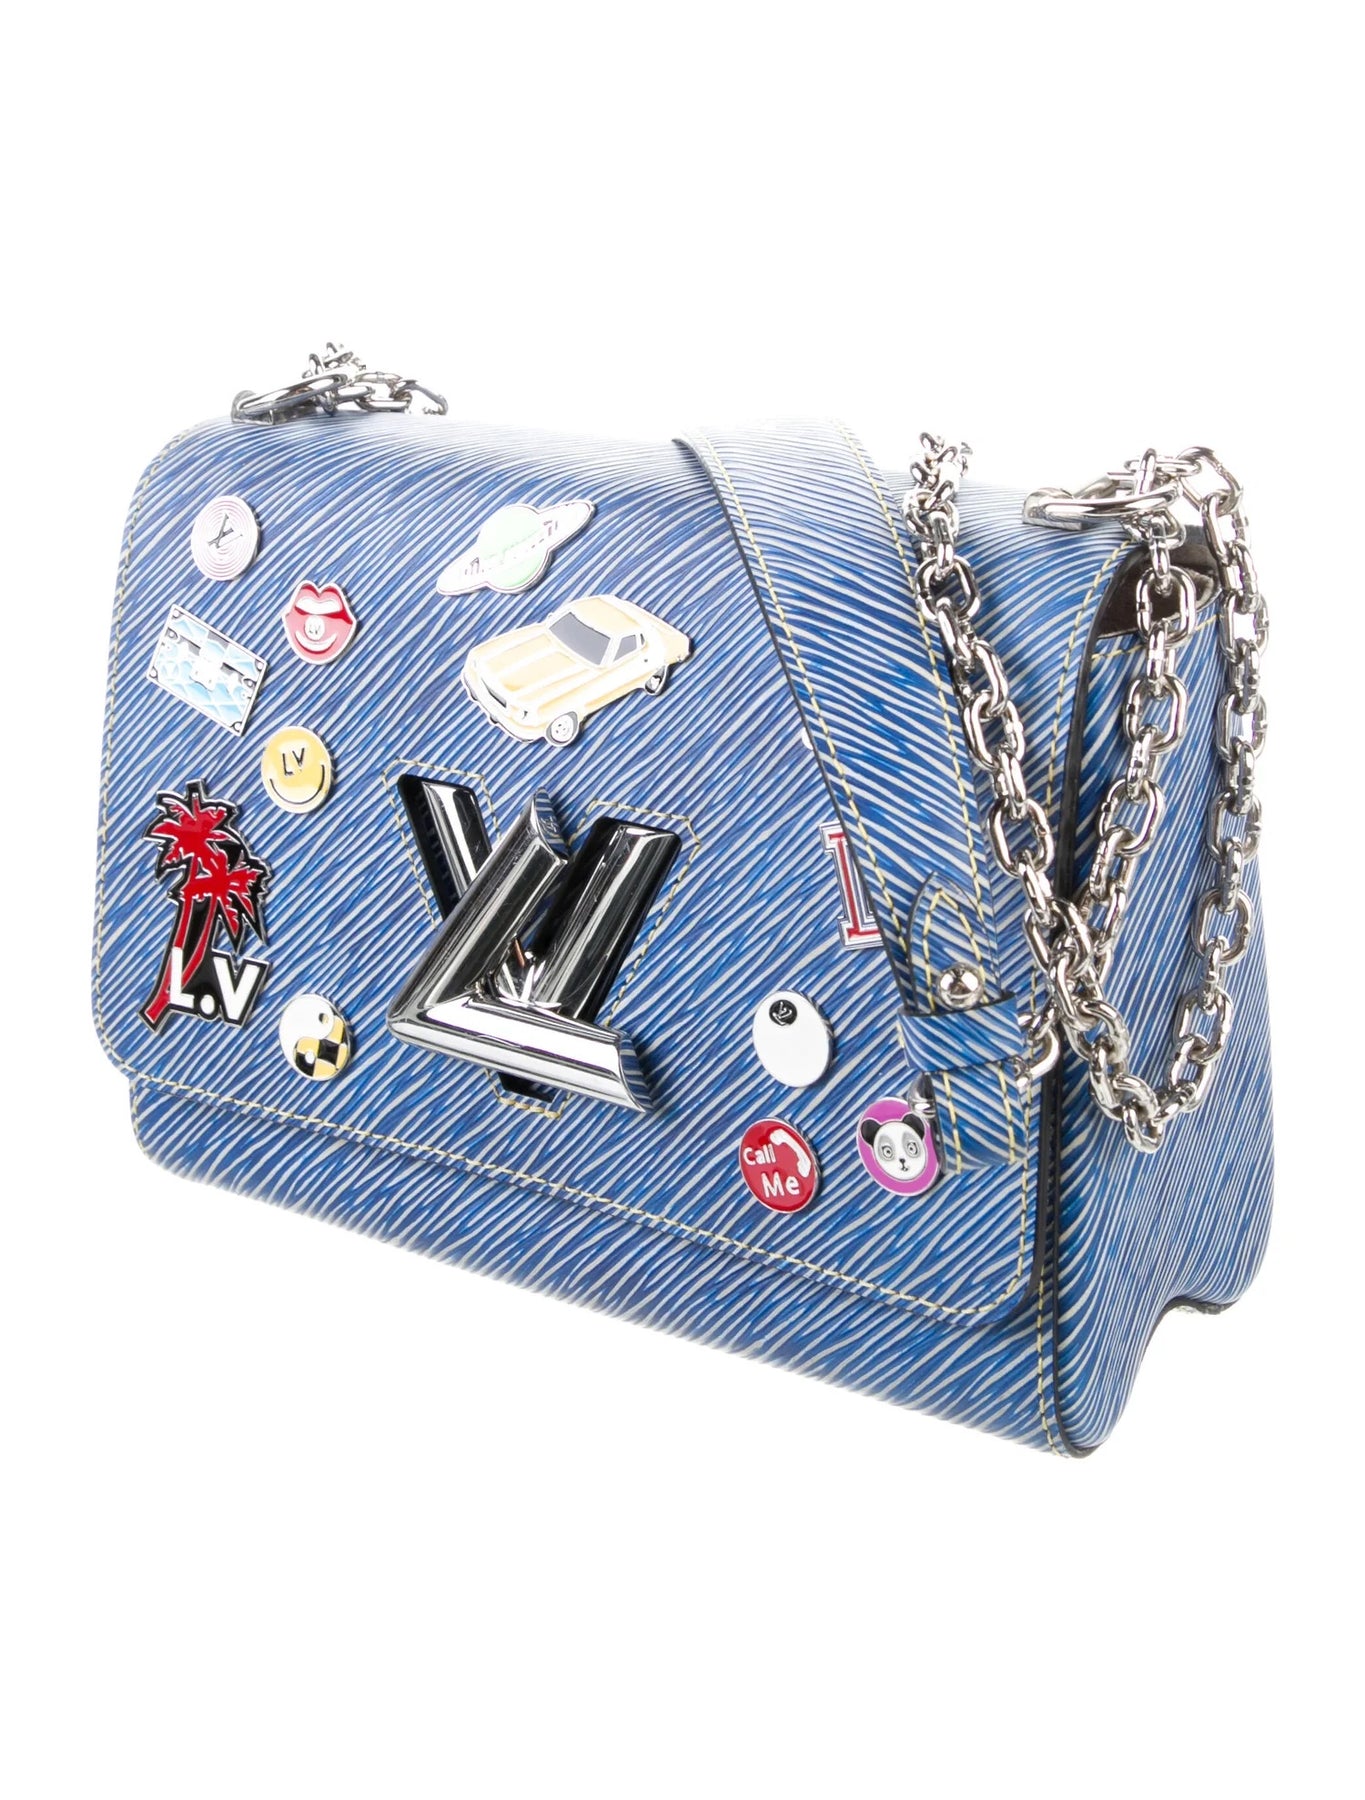 Louis Vuitton Blue Epi Leather Limited Edition Twist Shoulder bag